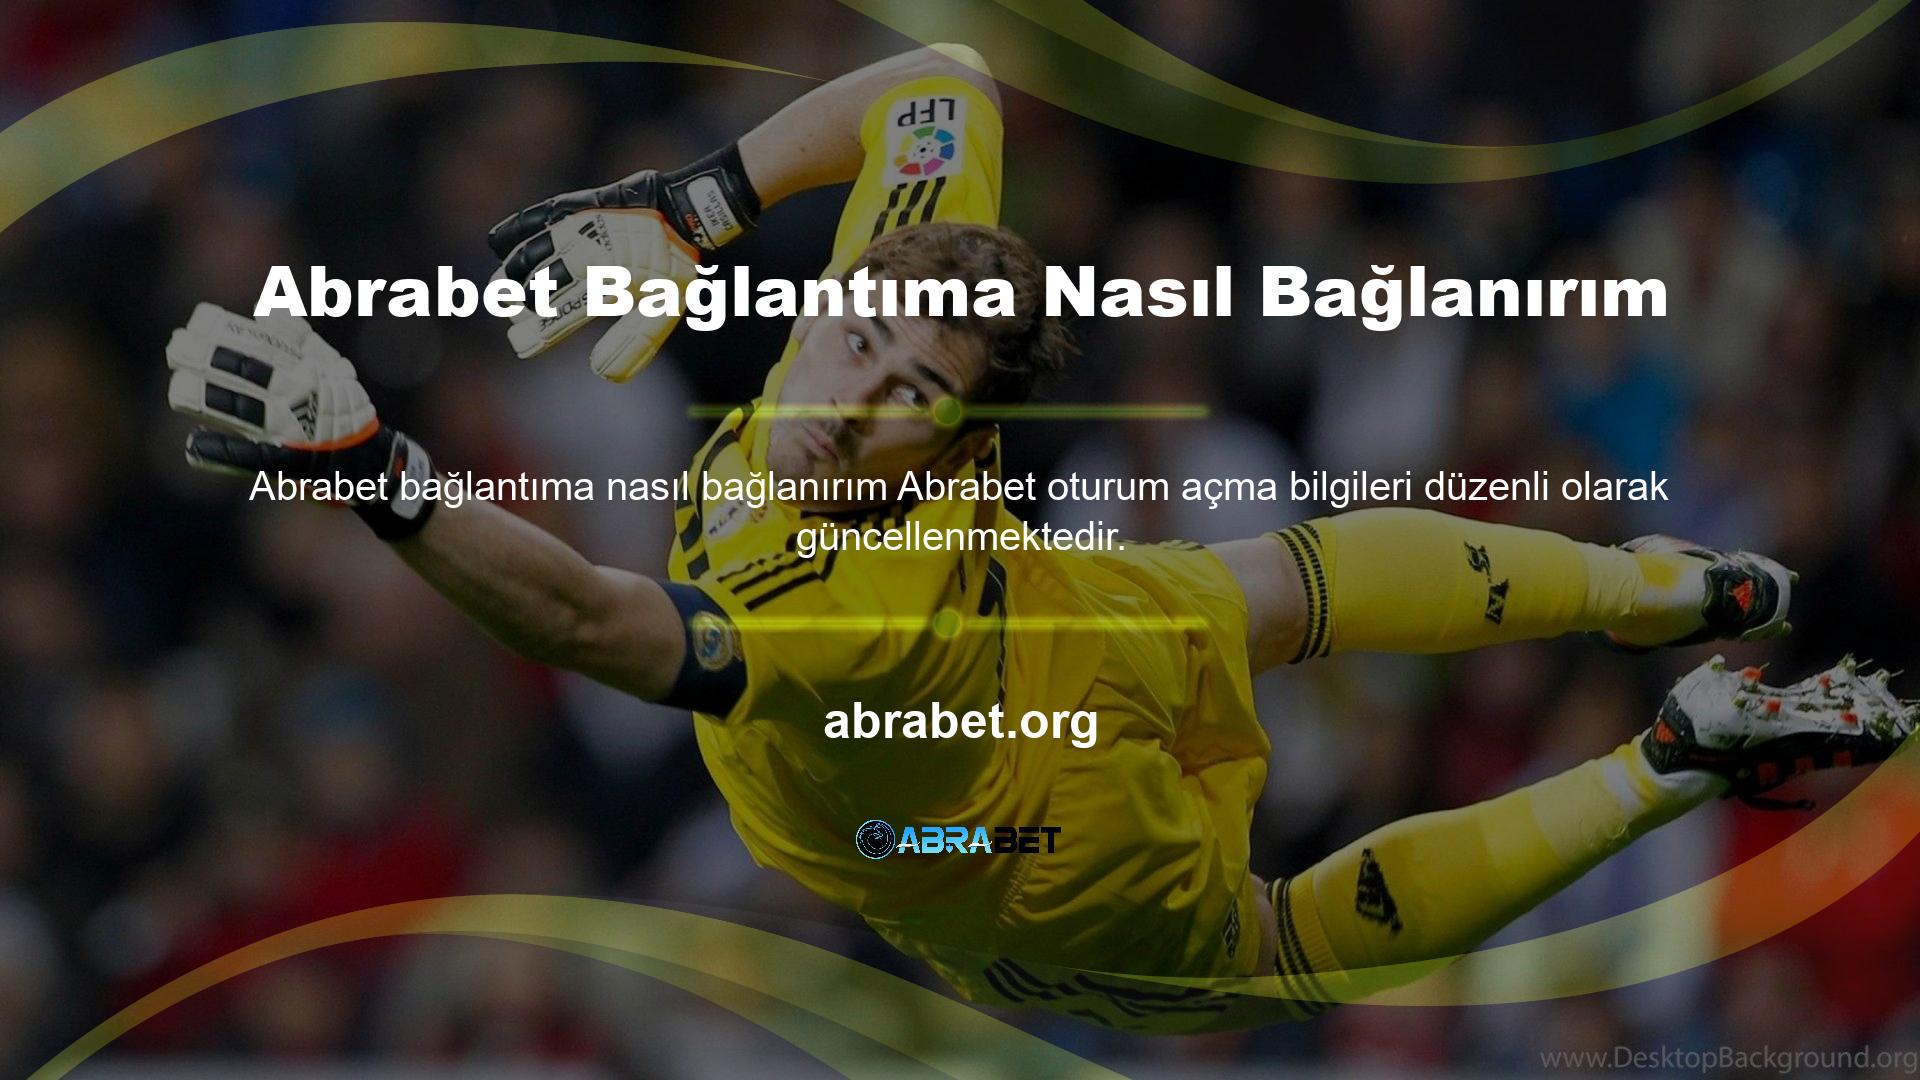 Abrabet resmi Twitter hesabı: en son giriş bilgilerini görün